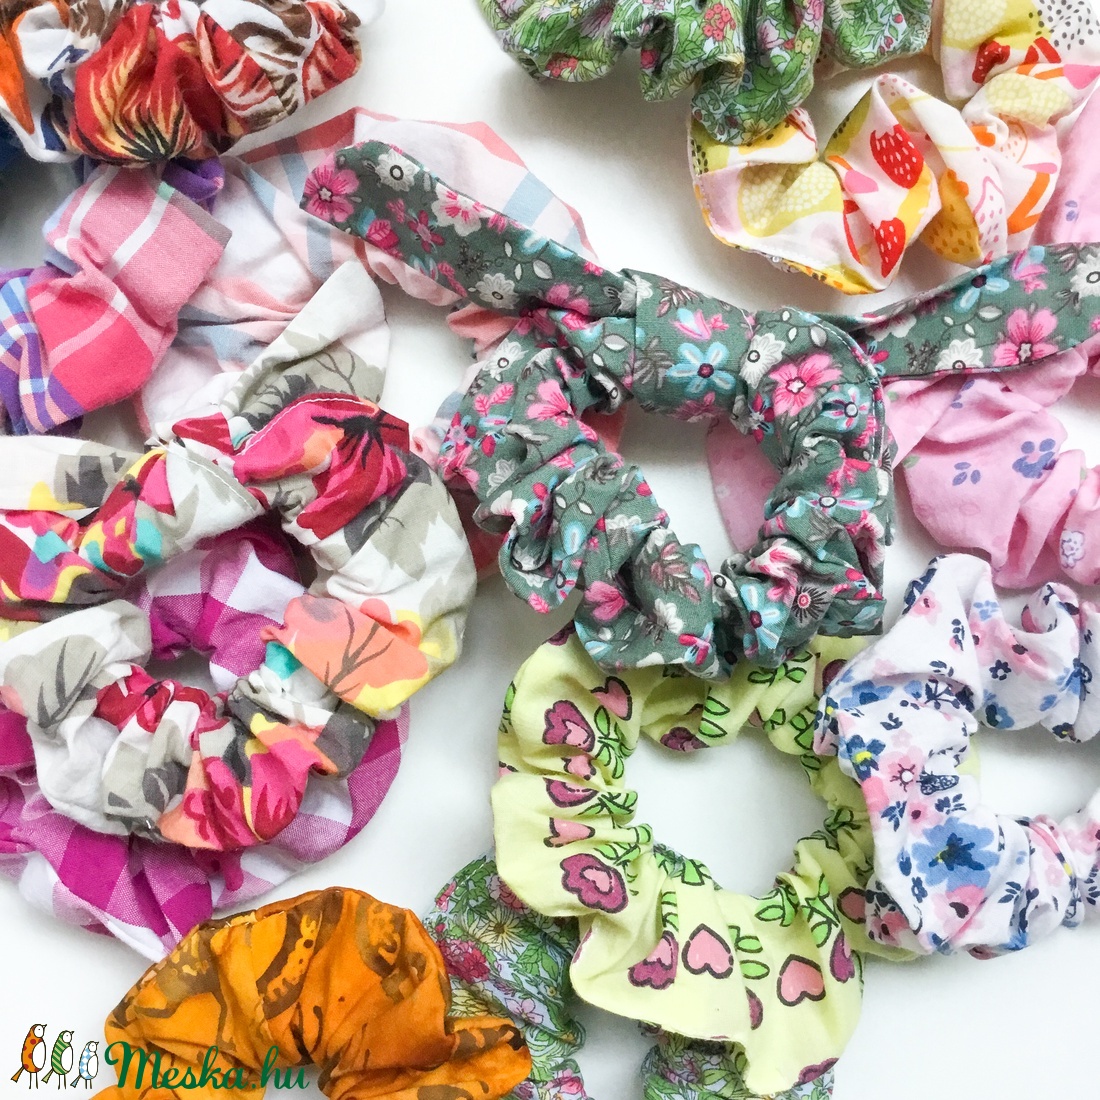 Tavaszi hajgumi - scrunchies - rugalmas textil karkötő kockás mintával lányoknak, nőknek, barátnőknek - ruha & divat - hajdísz & hajcsat - Meska.hu